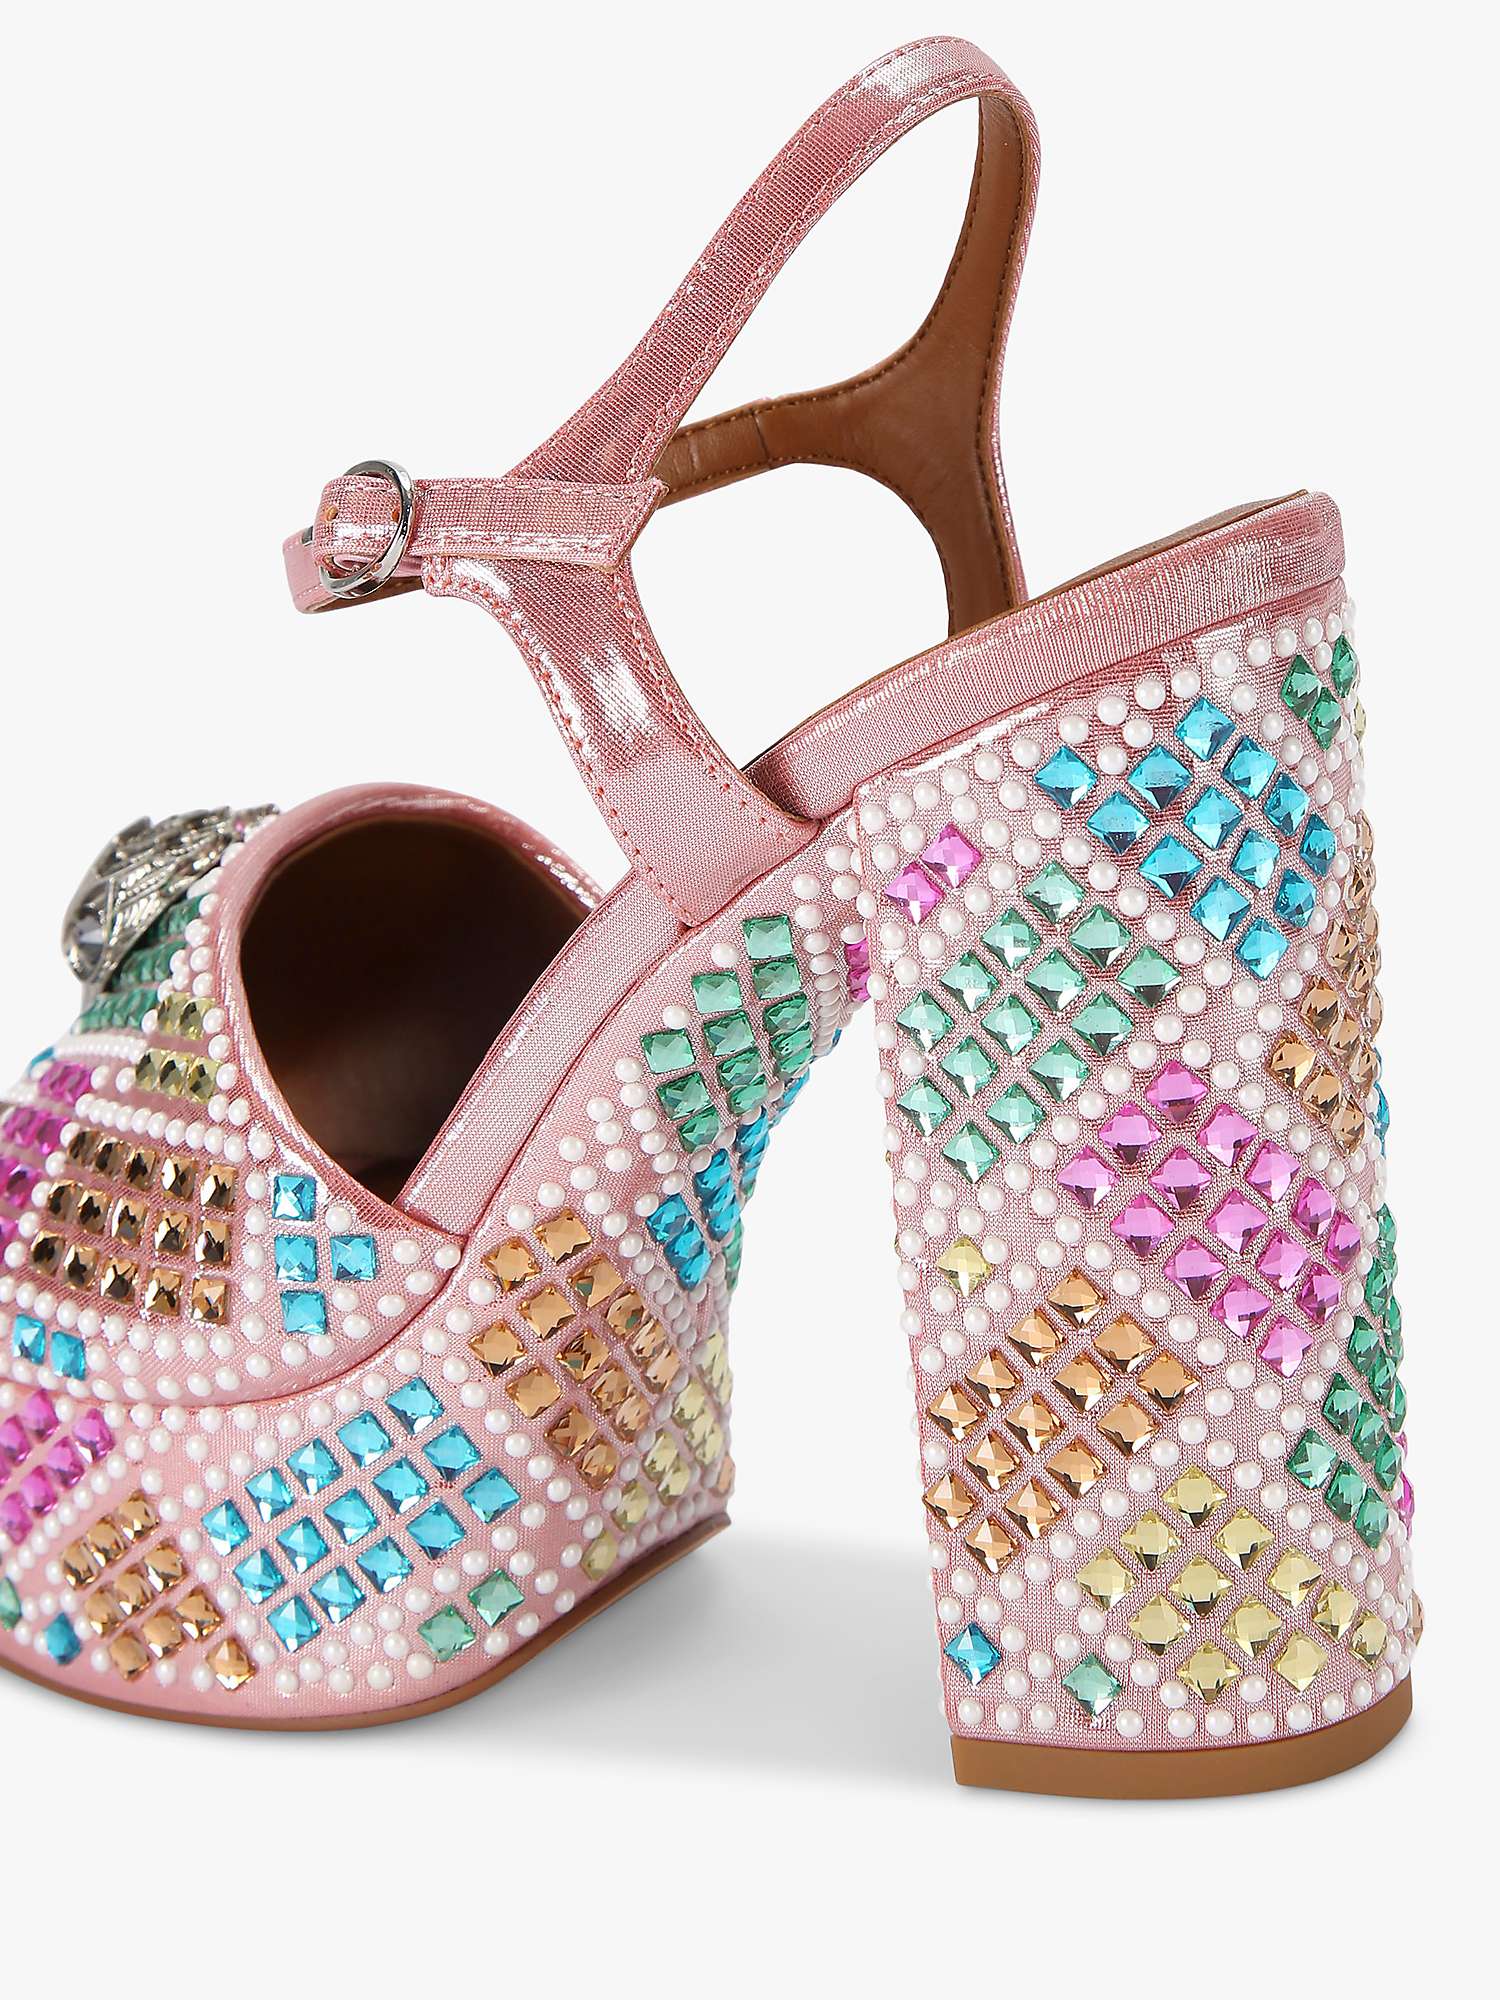 Buy Kurt Geiger London Kensington Embellished Platform Heel Sandals, Pink/Multi Online at johnlewis.com